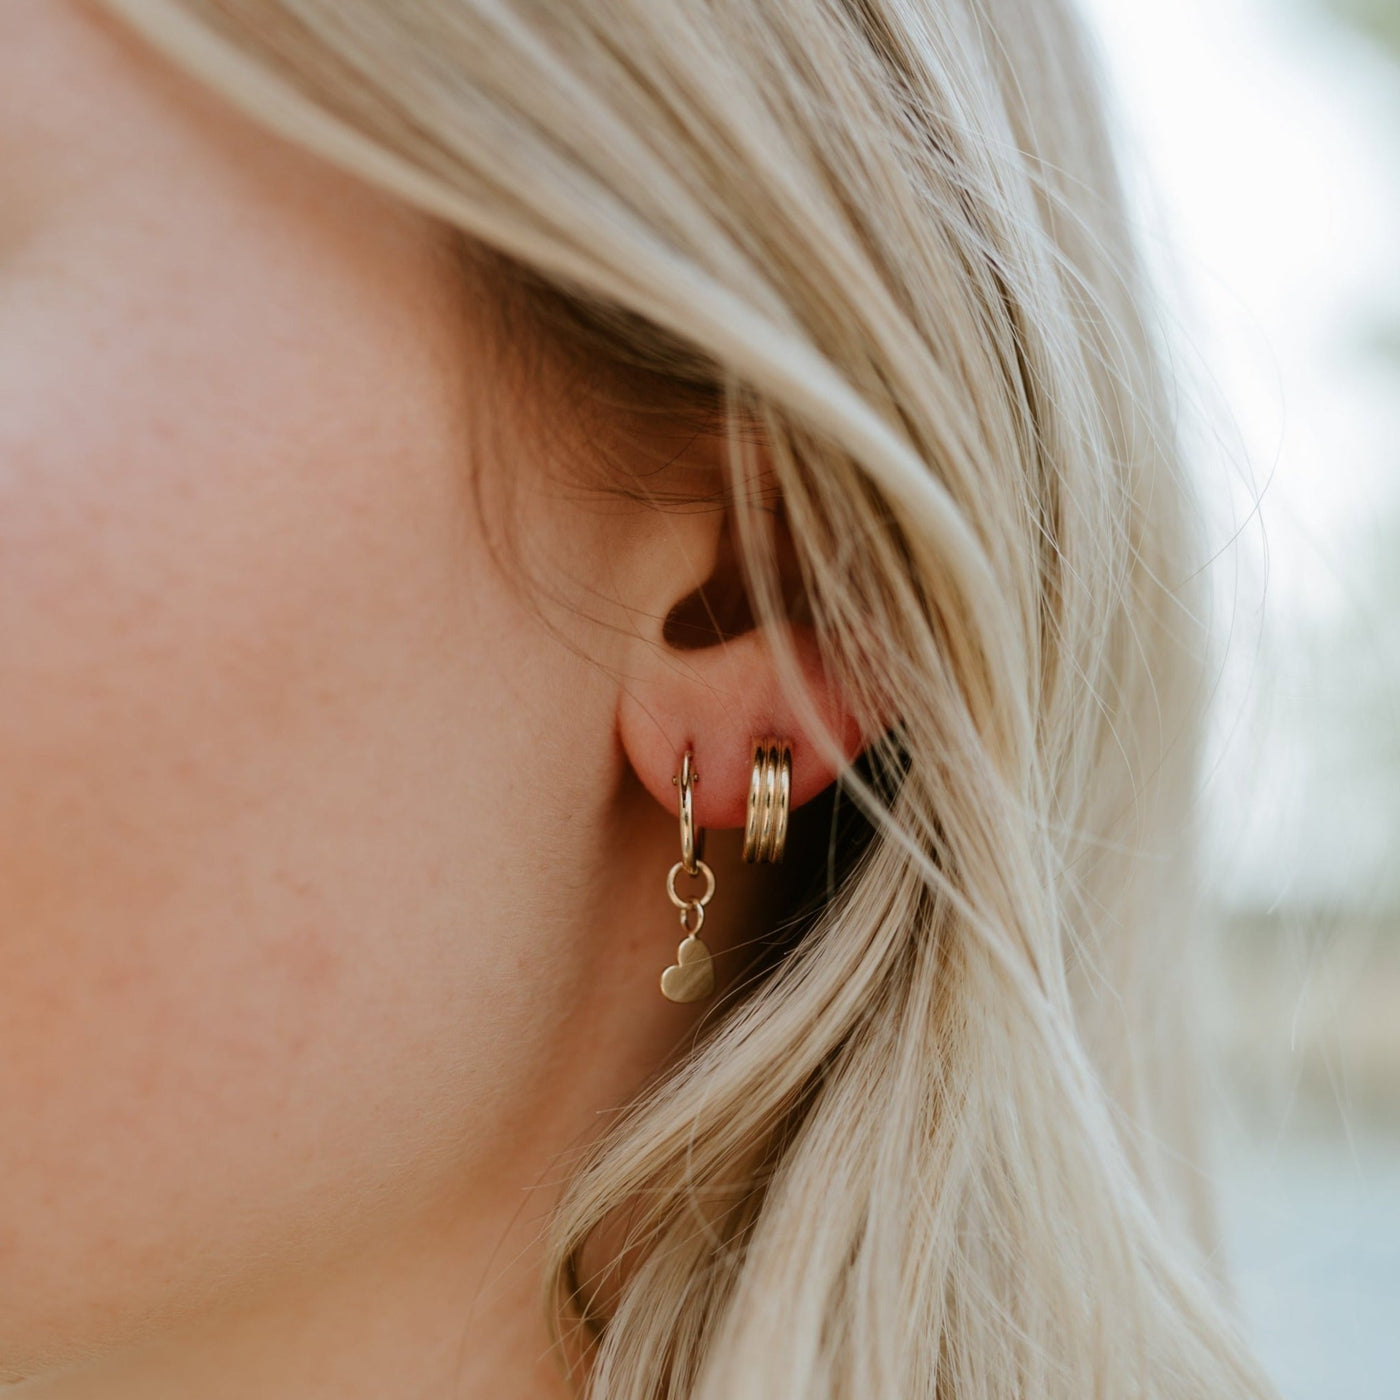 Nelson Earrings - Jillian Leigh Jewellery - earrings